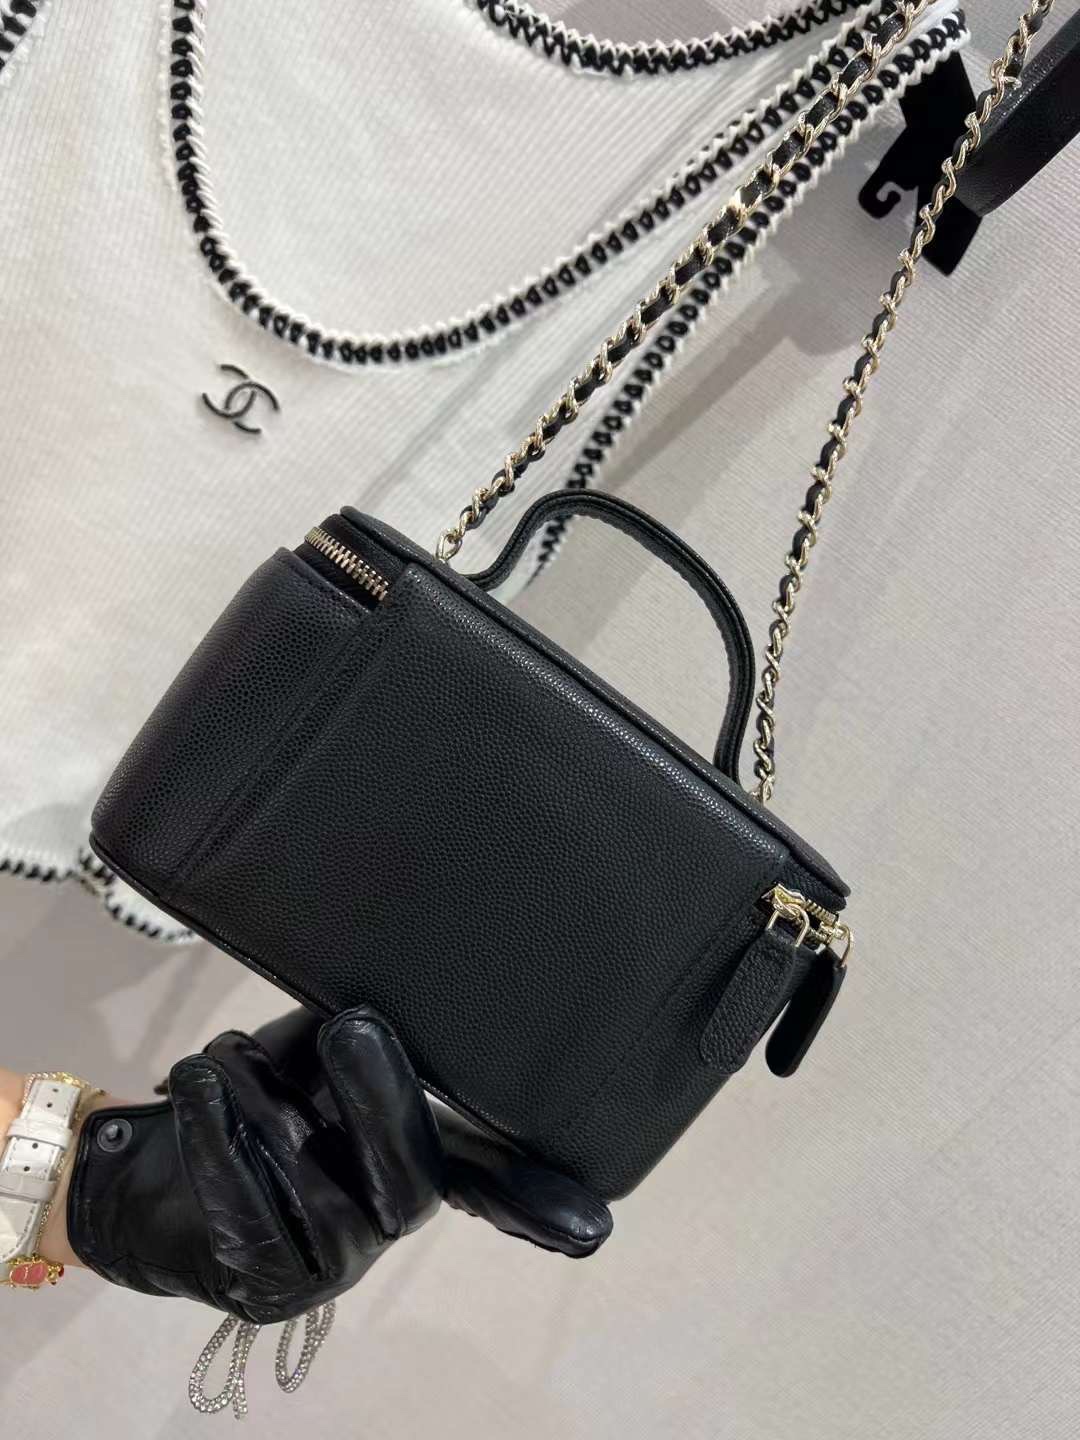 【P1280】Chanel包包批发 香奈儿小口袋方形盒子包手提斜挎化妆包 黑色